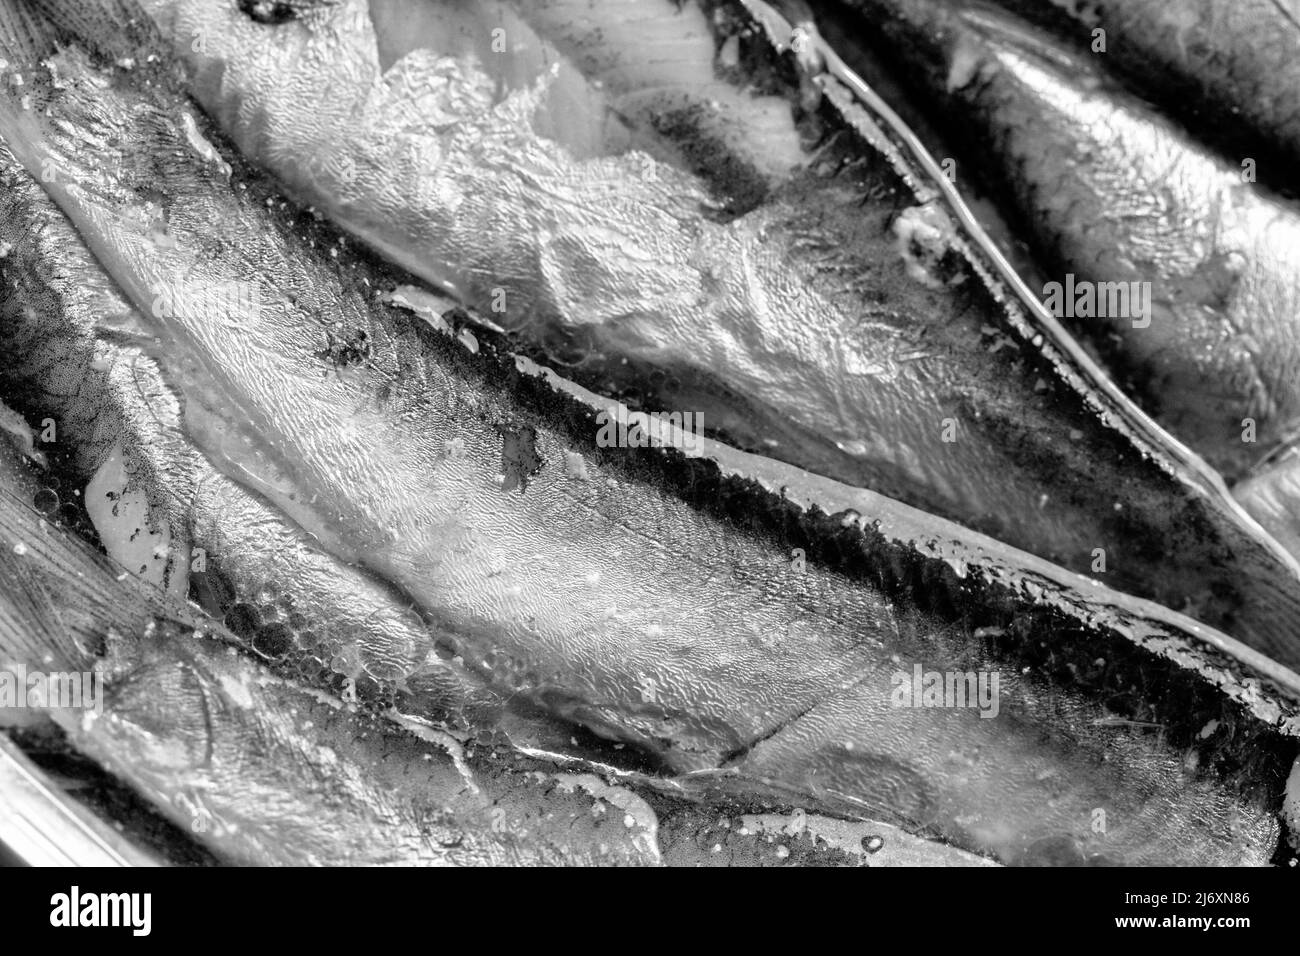 Un disegno astratto di linee è creato in questo macrosshot di sardine in scatola, un pesce che è una grande fonte di omega-3s, che riduce le malattie cardiache Foto Stock